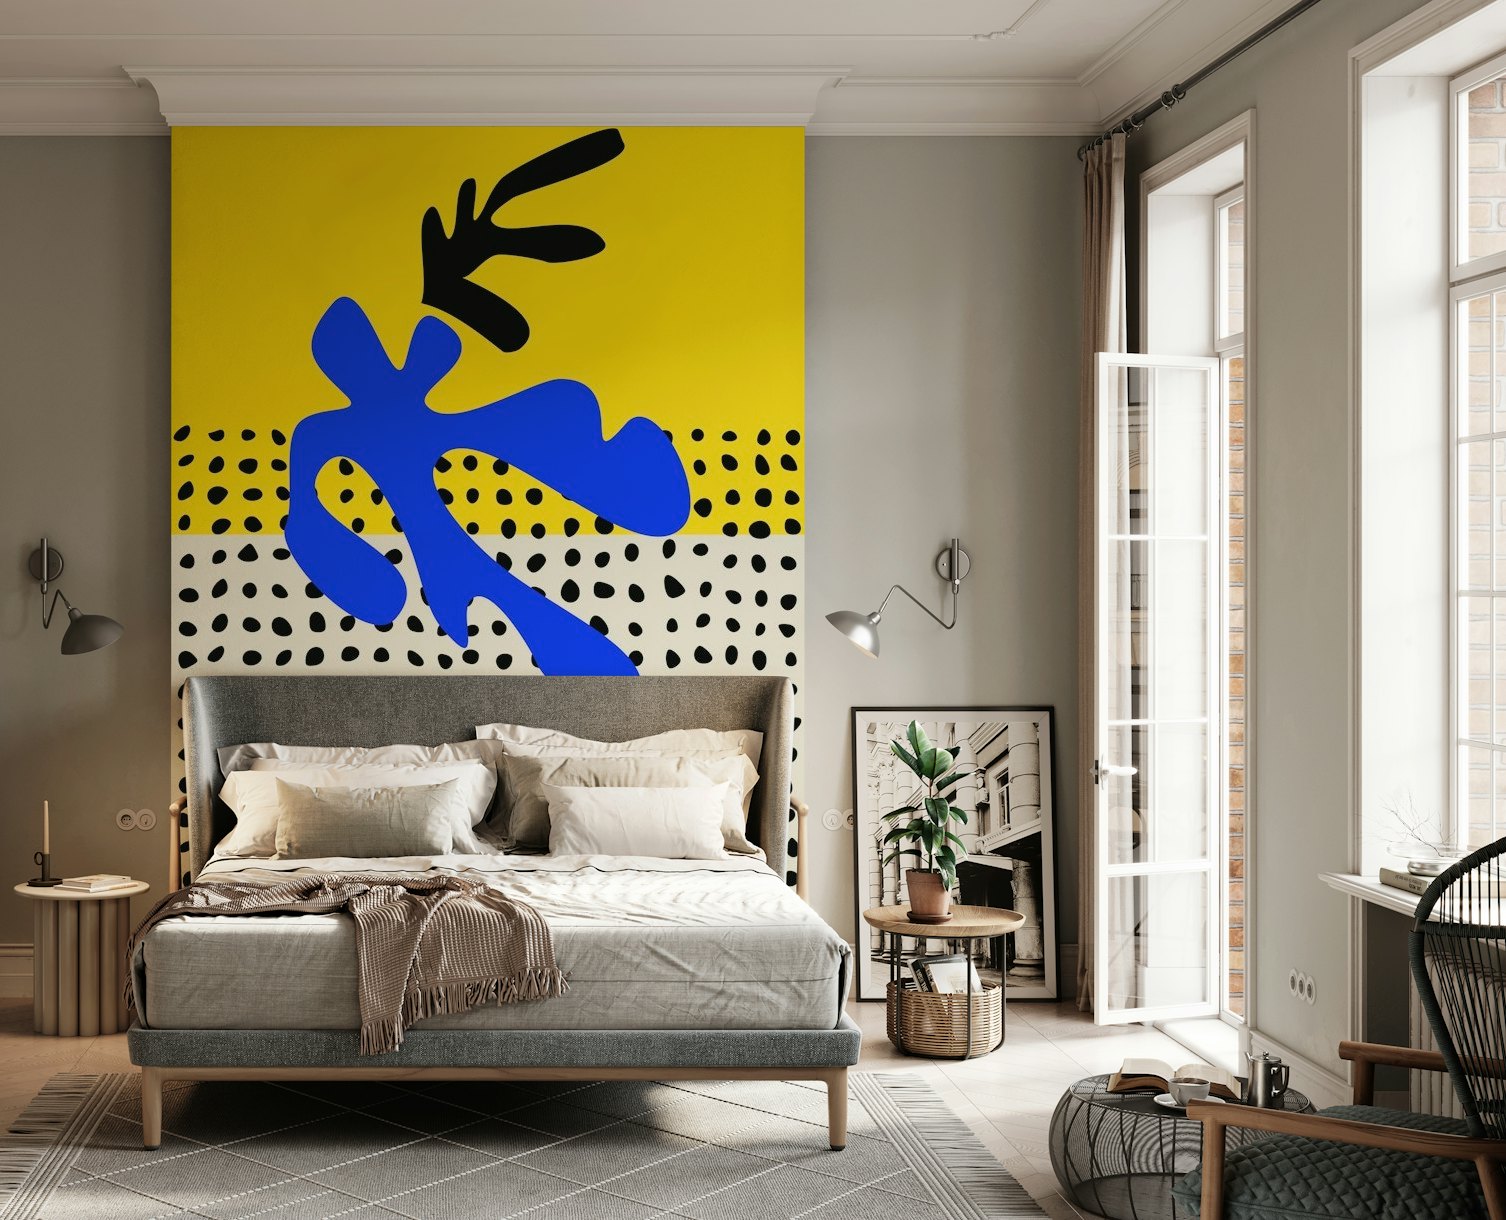 Vibrant Matisse Inspired Art wallpaper